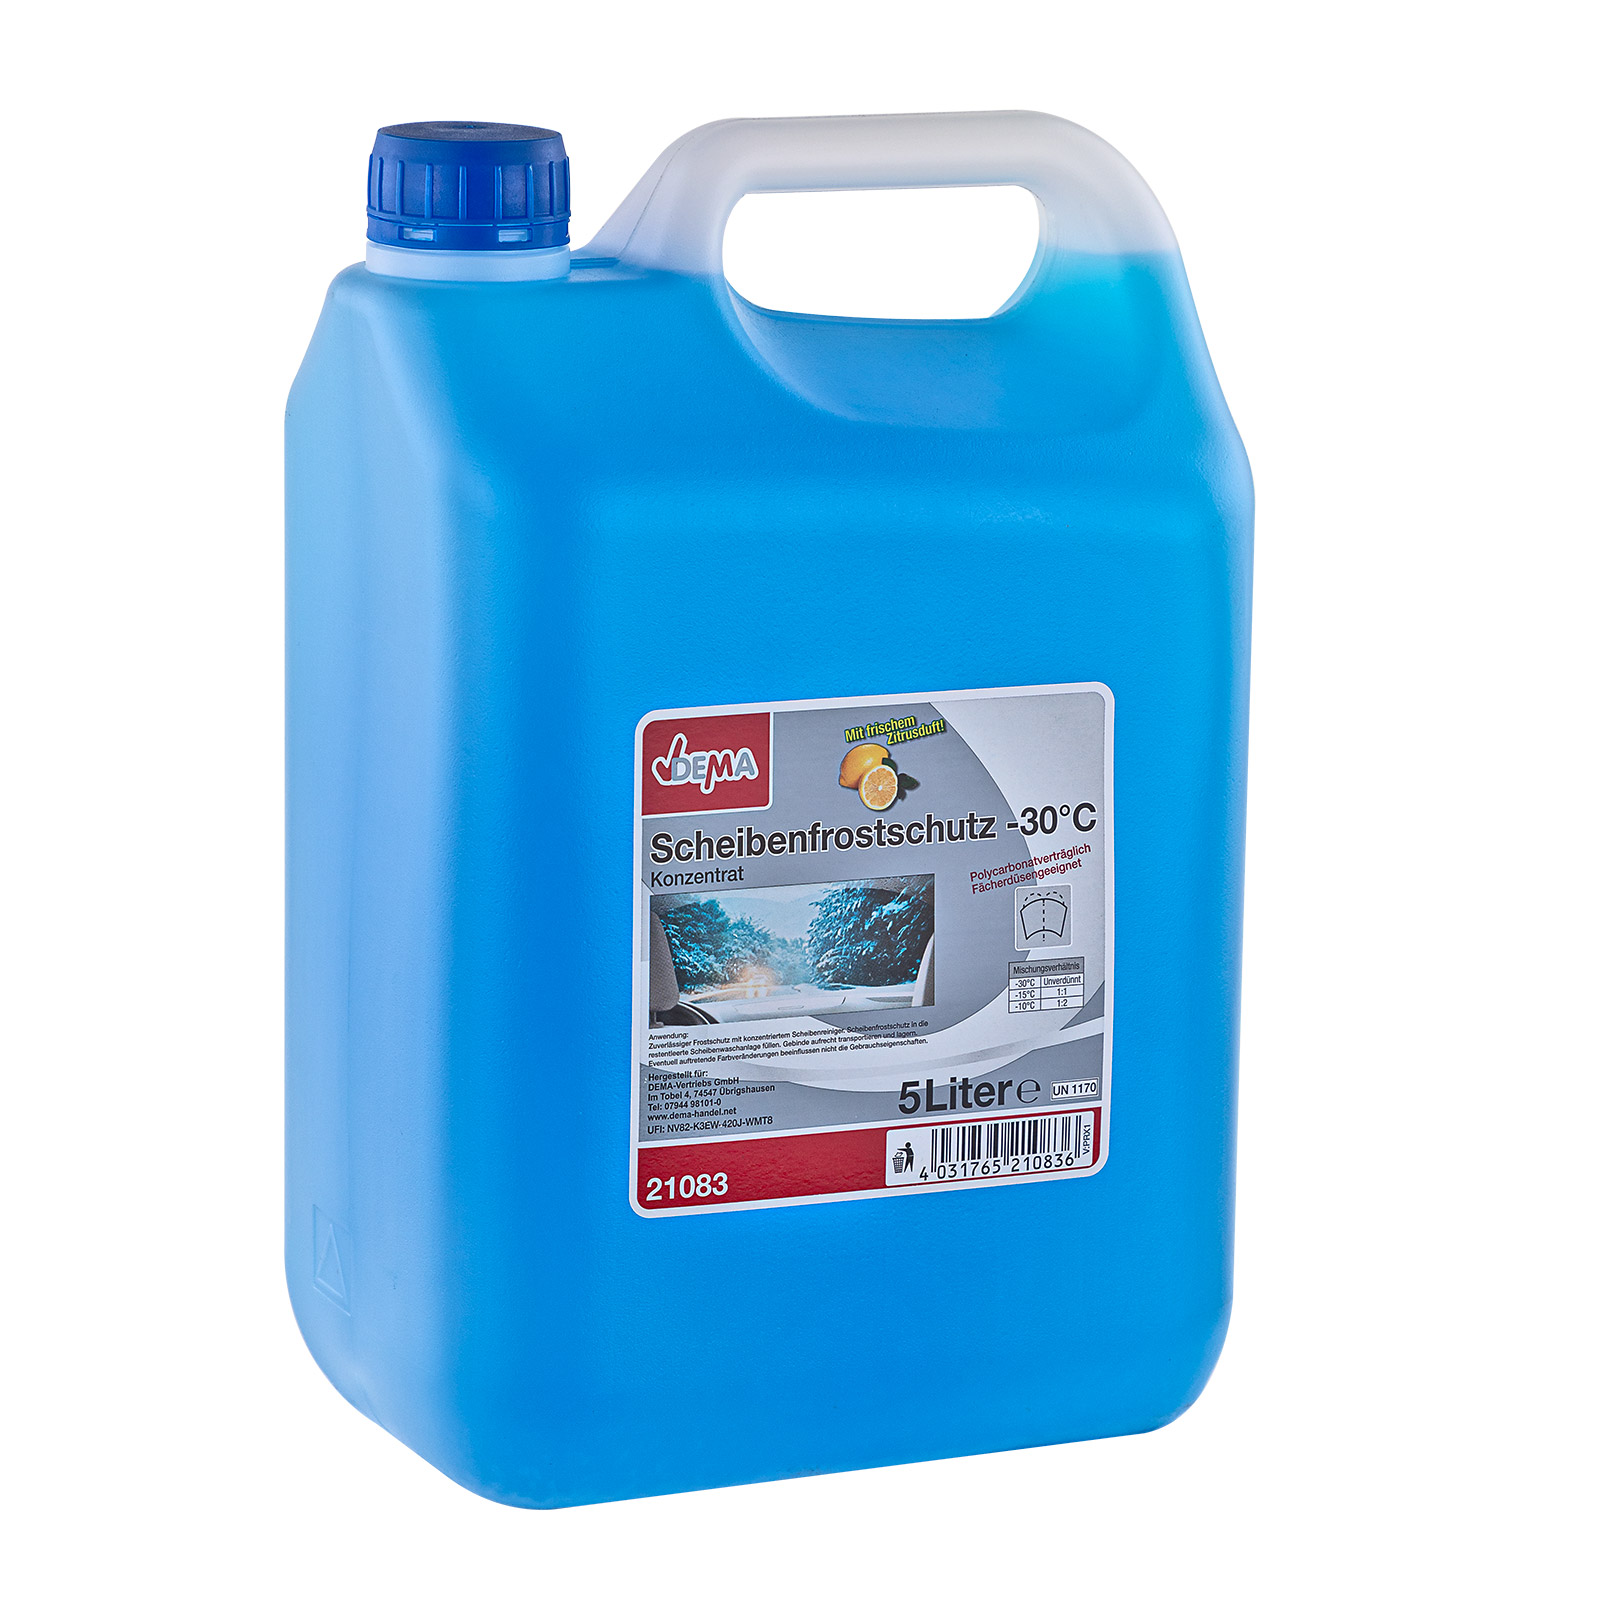 Scheiben-Frostschutz 5 Liter bis -60°c - HIWESO Shop